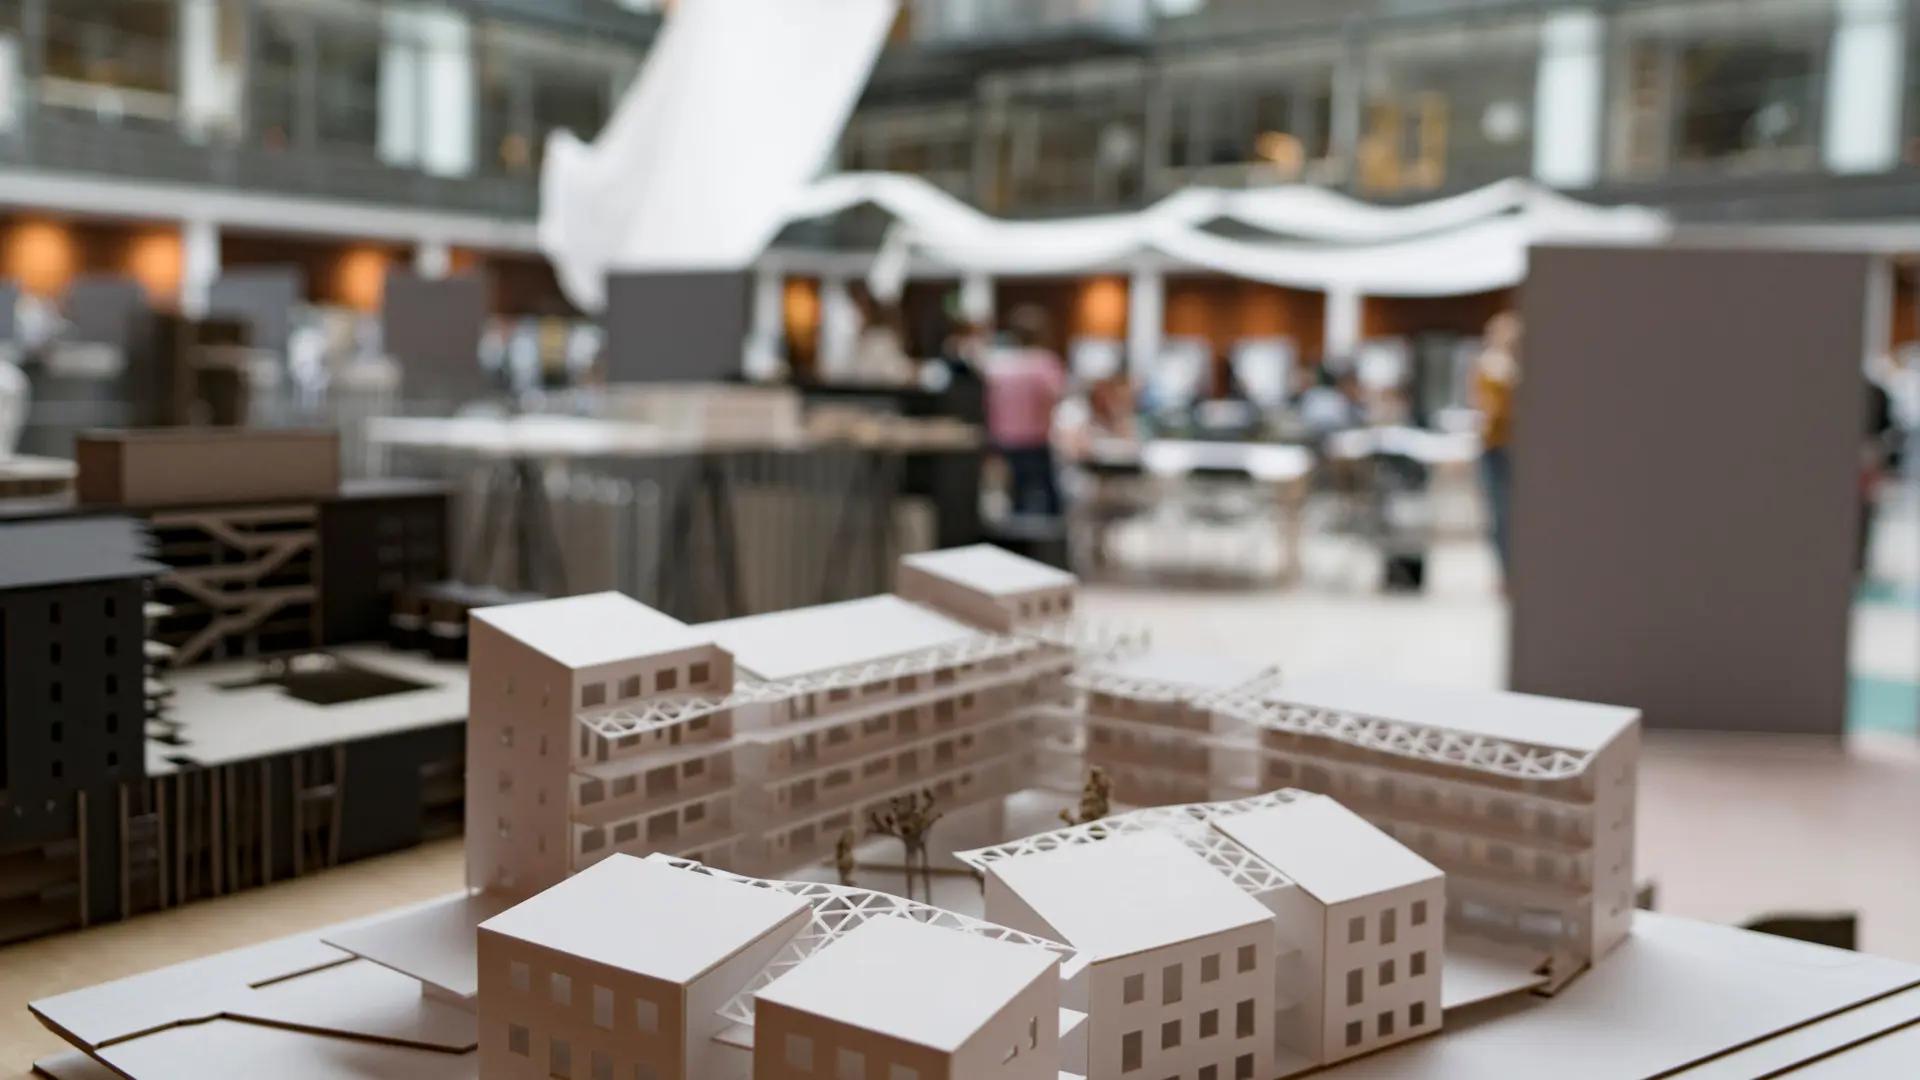 Modell av byggnader från utställning på Ljusgården